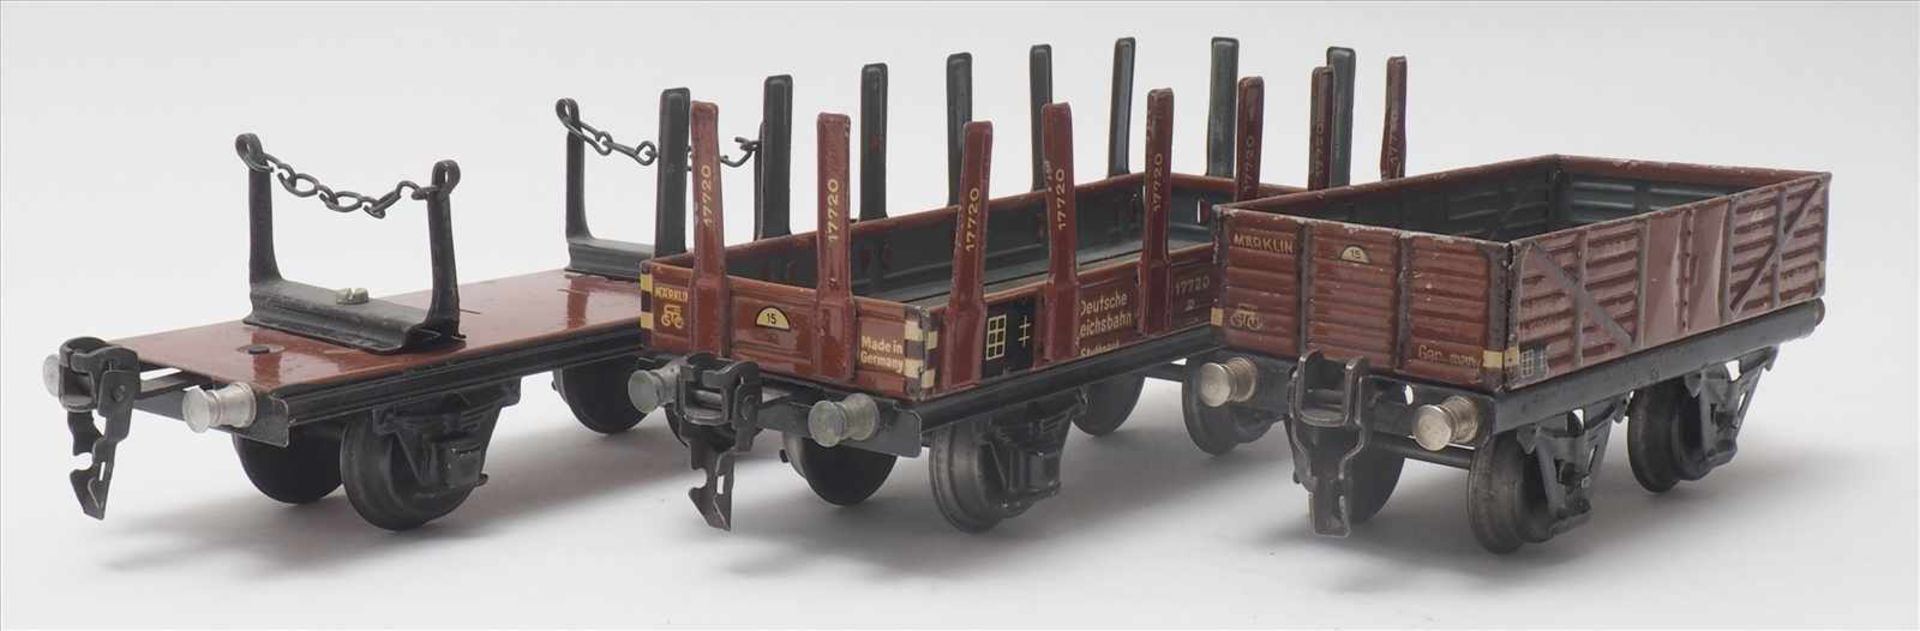 Drei GüterwagenMärklin Spur 0. 1930-er Jahre. Niederbordwagen, Holzwagen und Rungenwagen. Guter,